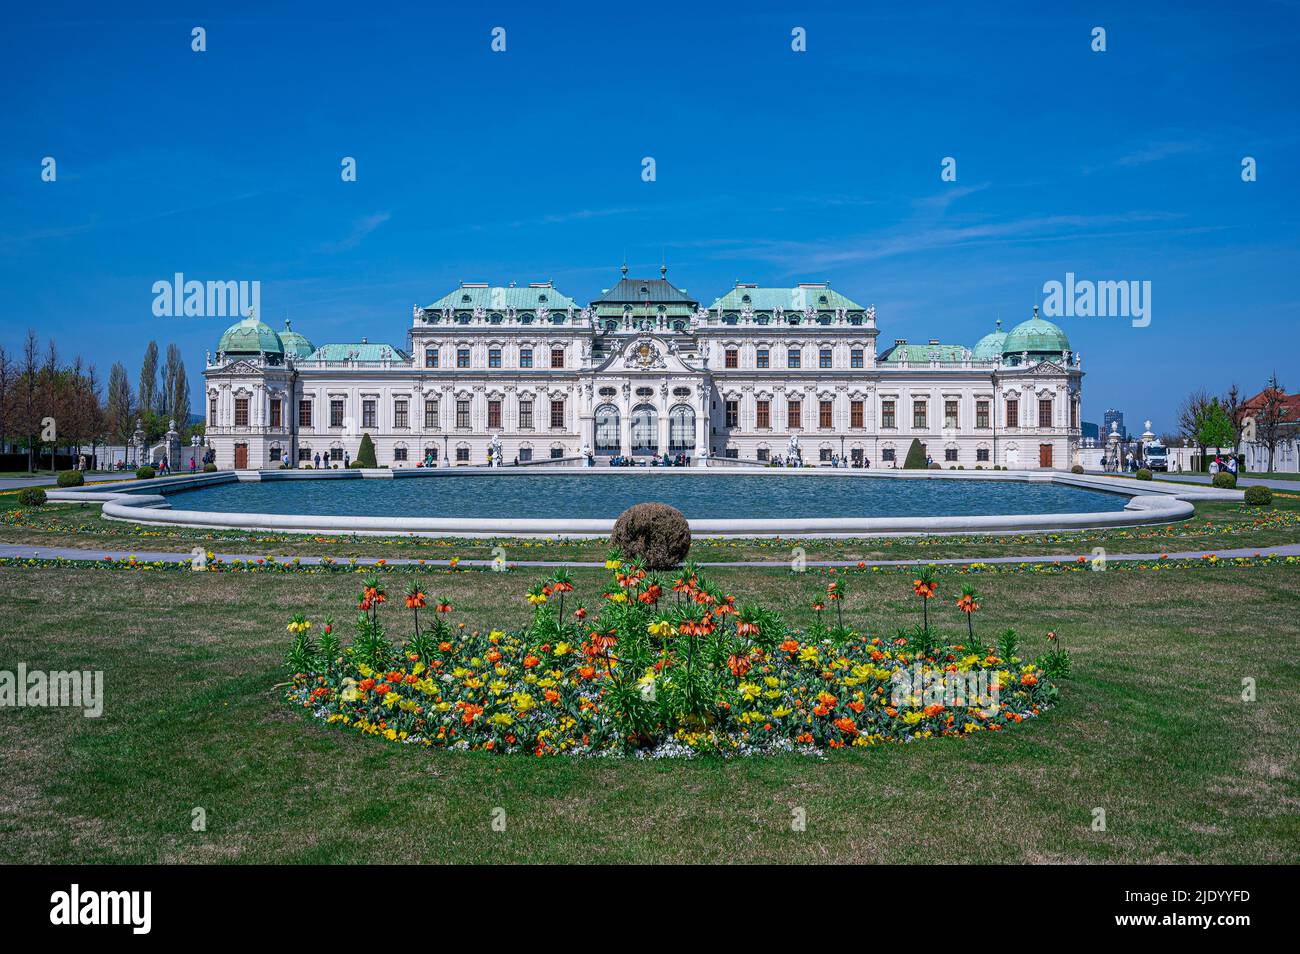 Upper Belvedere palace in Vienna, Austria Stock Photo